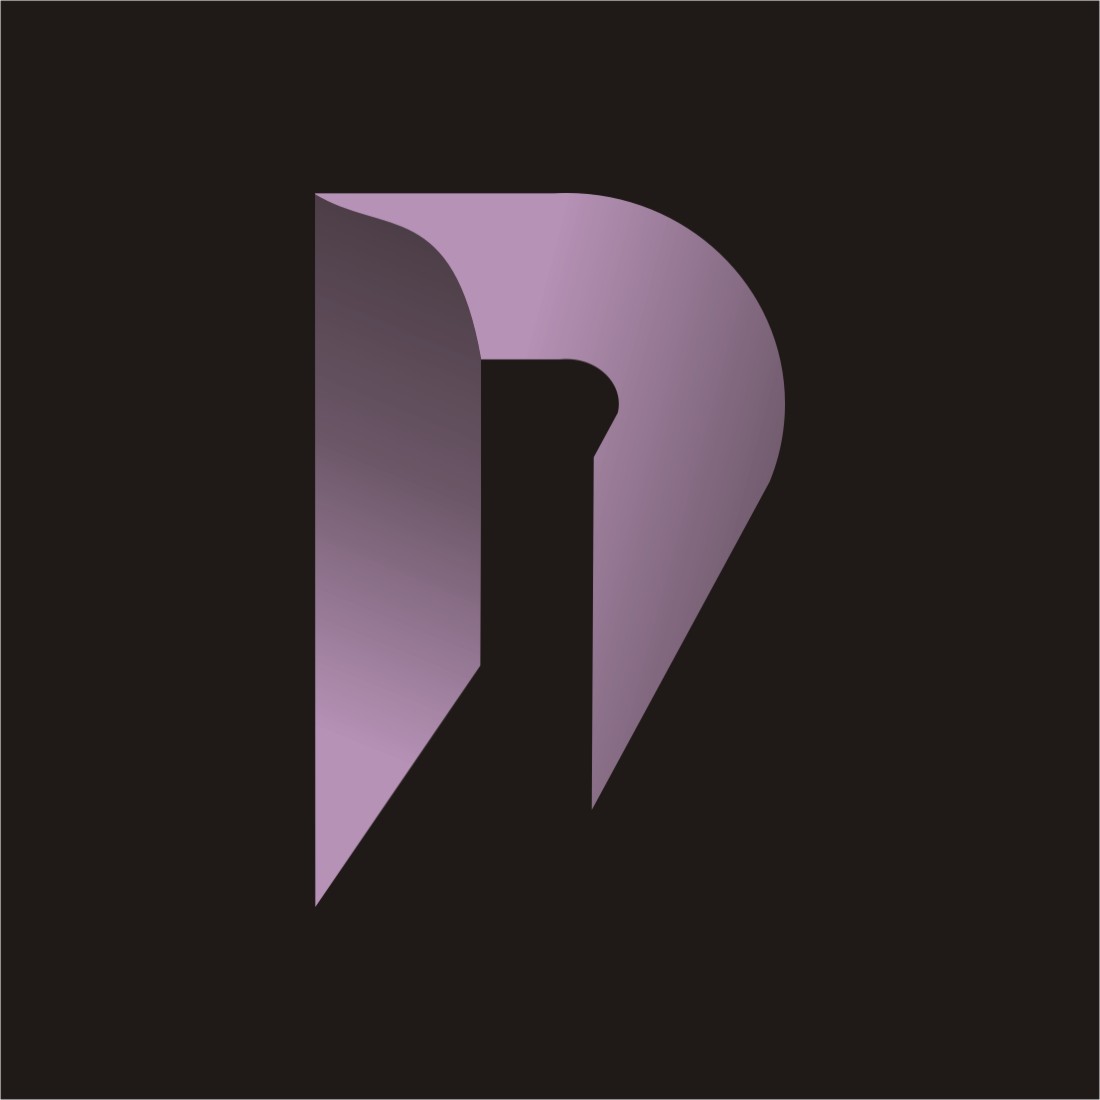 Letter n monogram logo cover image.